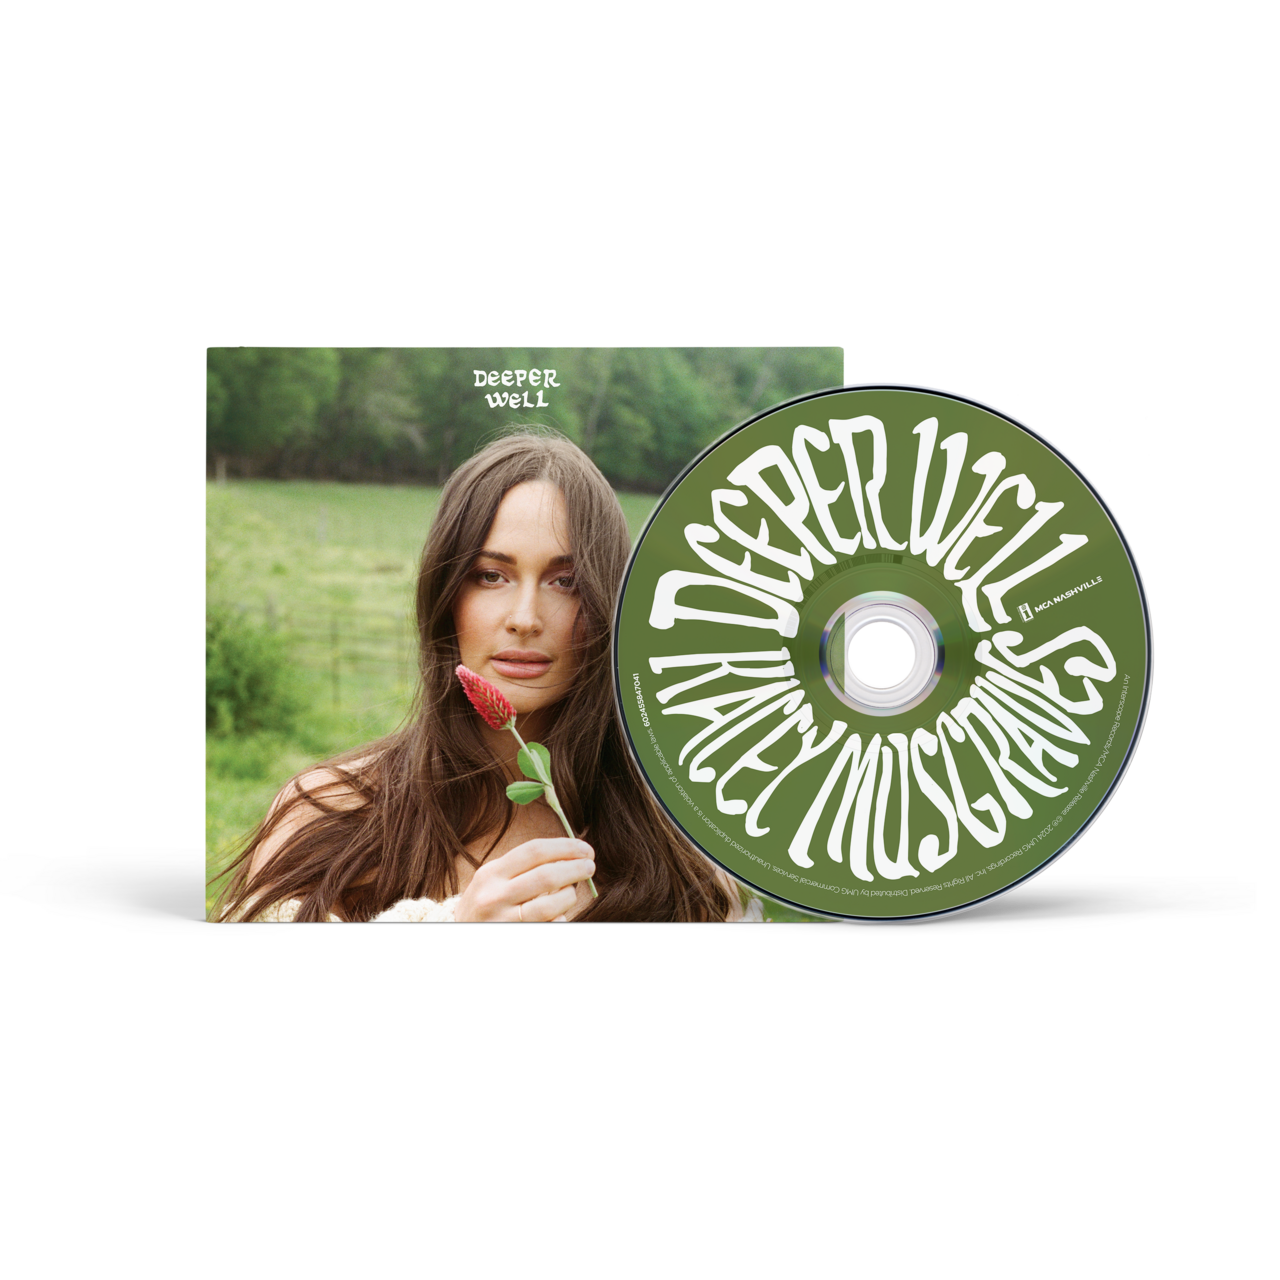 Deeper Well: CD, Green Cassette + Signed Art Card